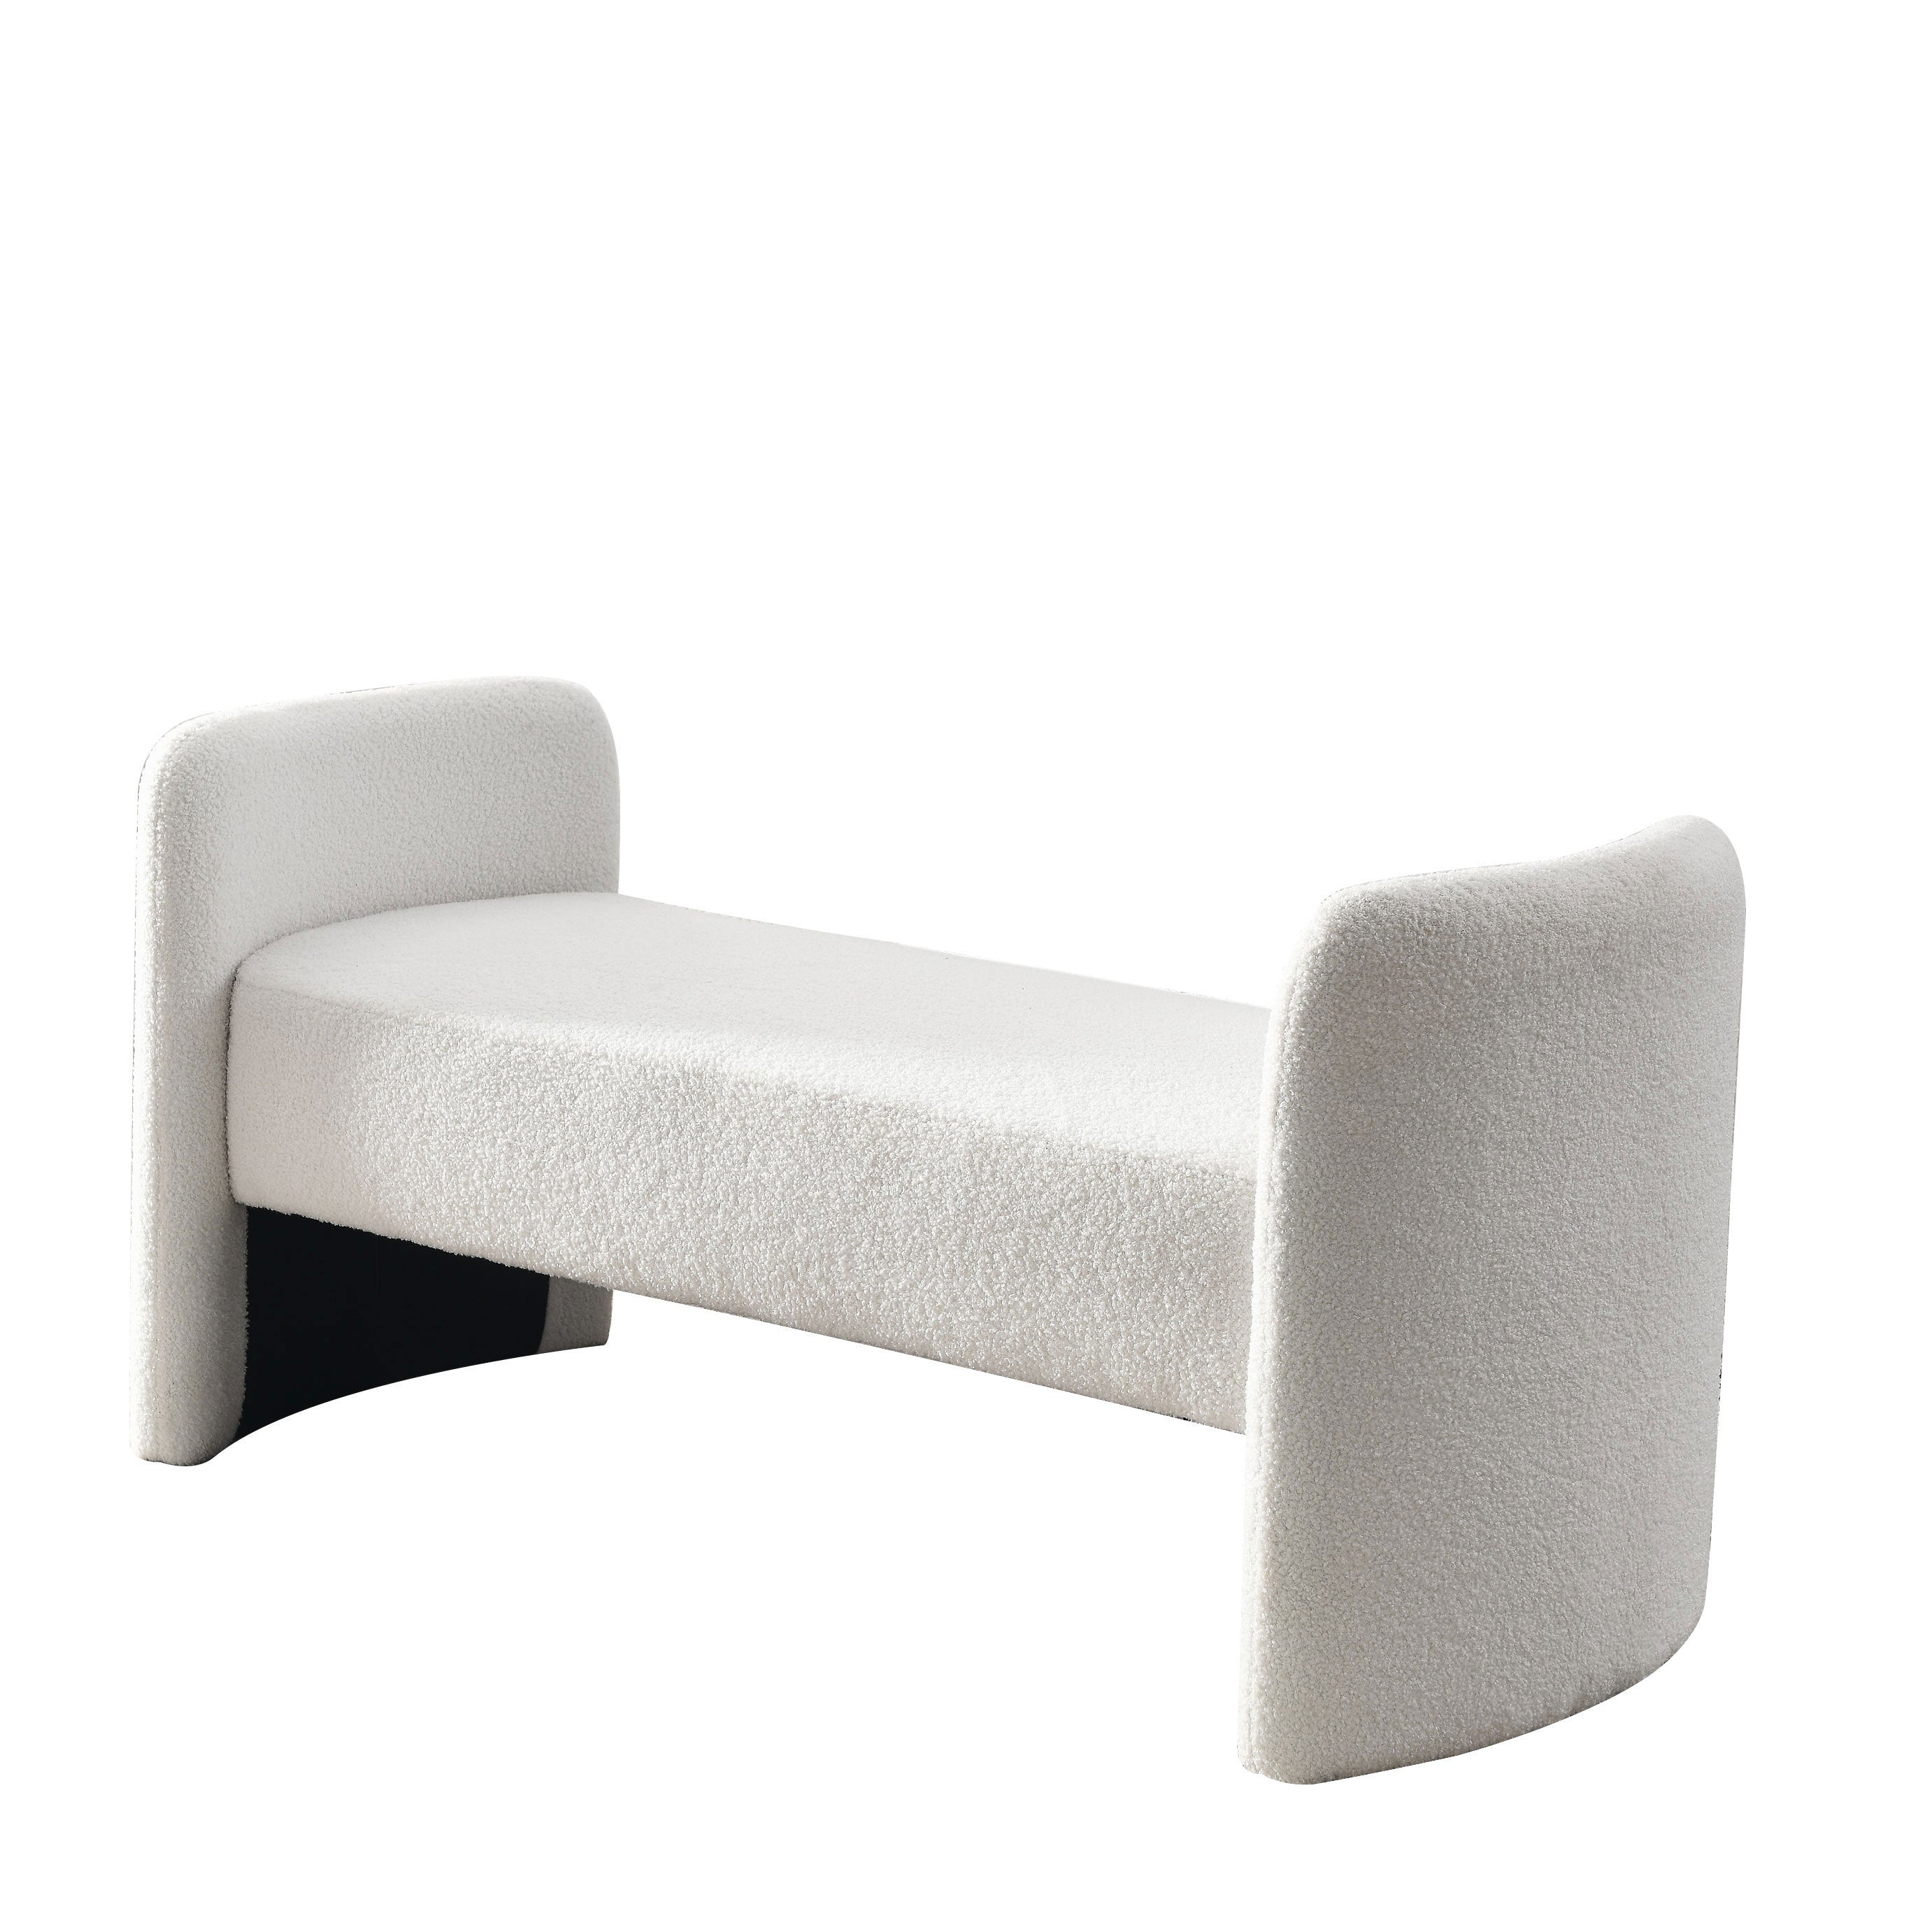 Contemporary Bench Design Ottoman 52" - Teddy White